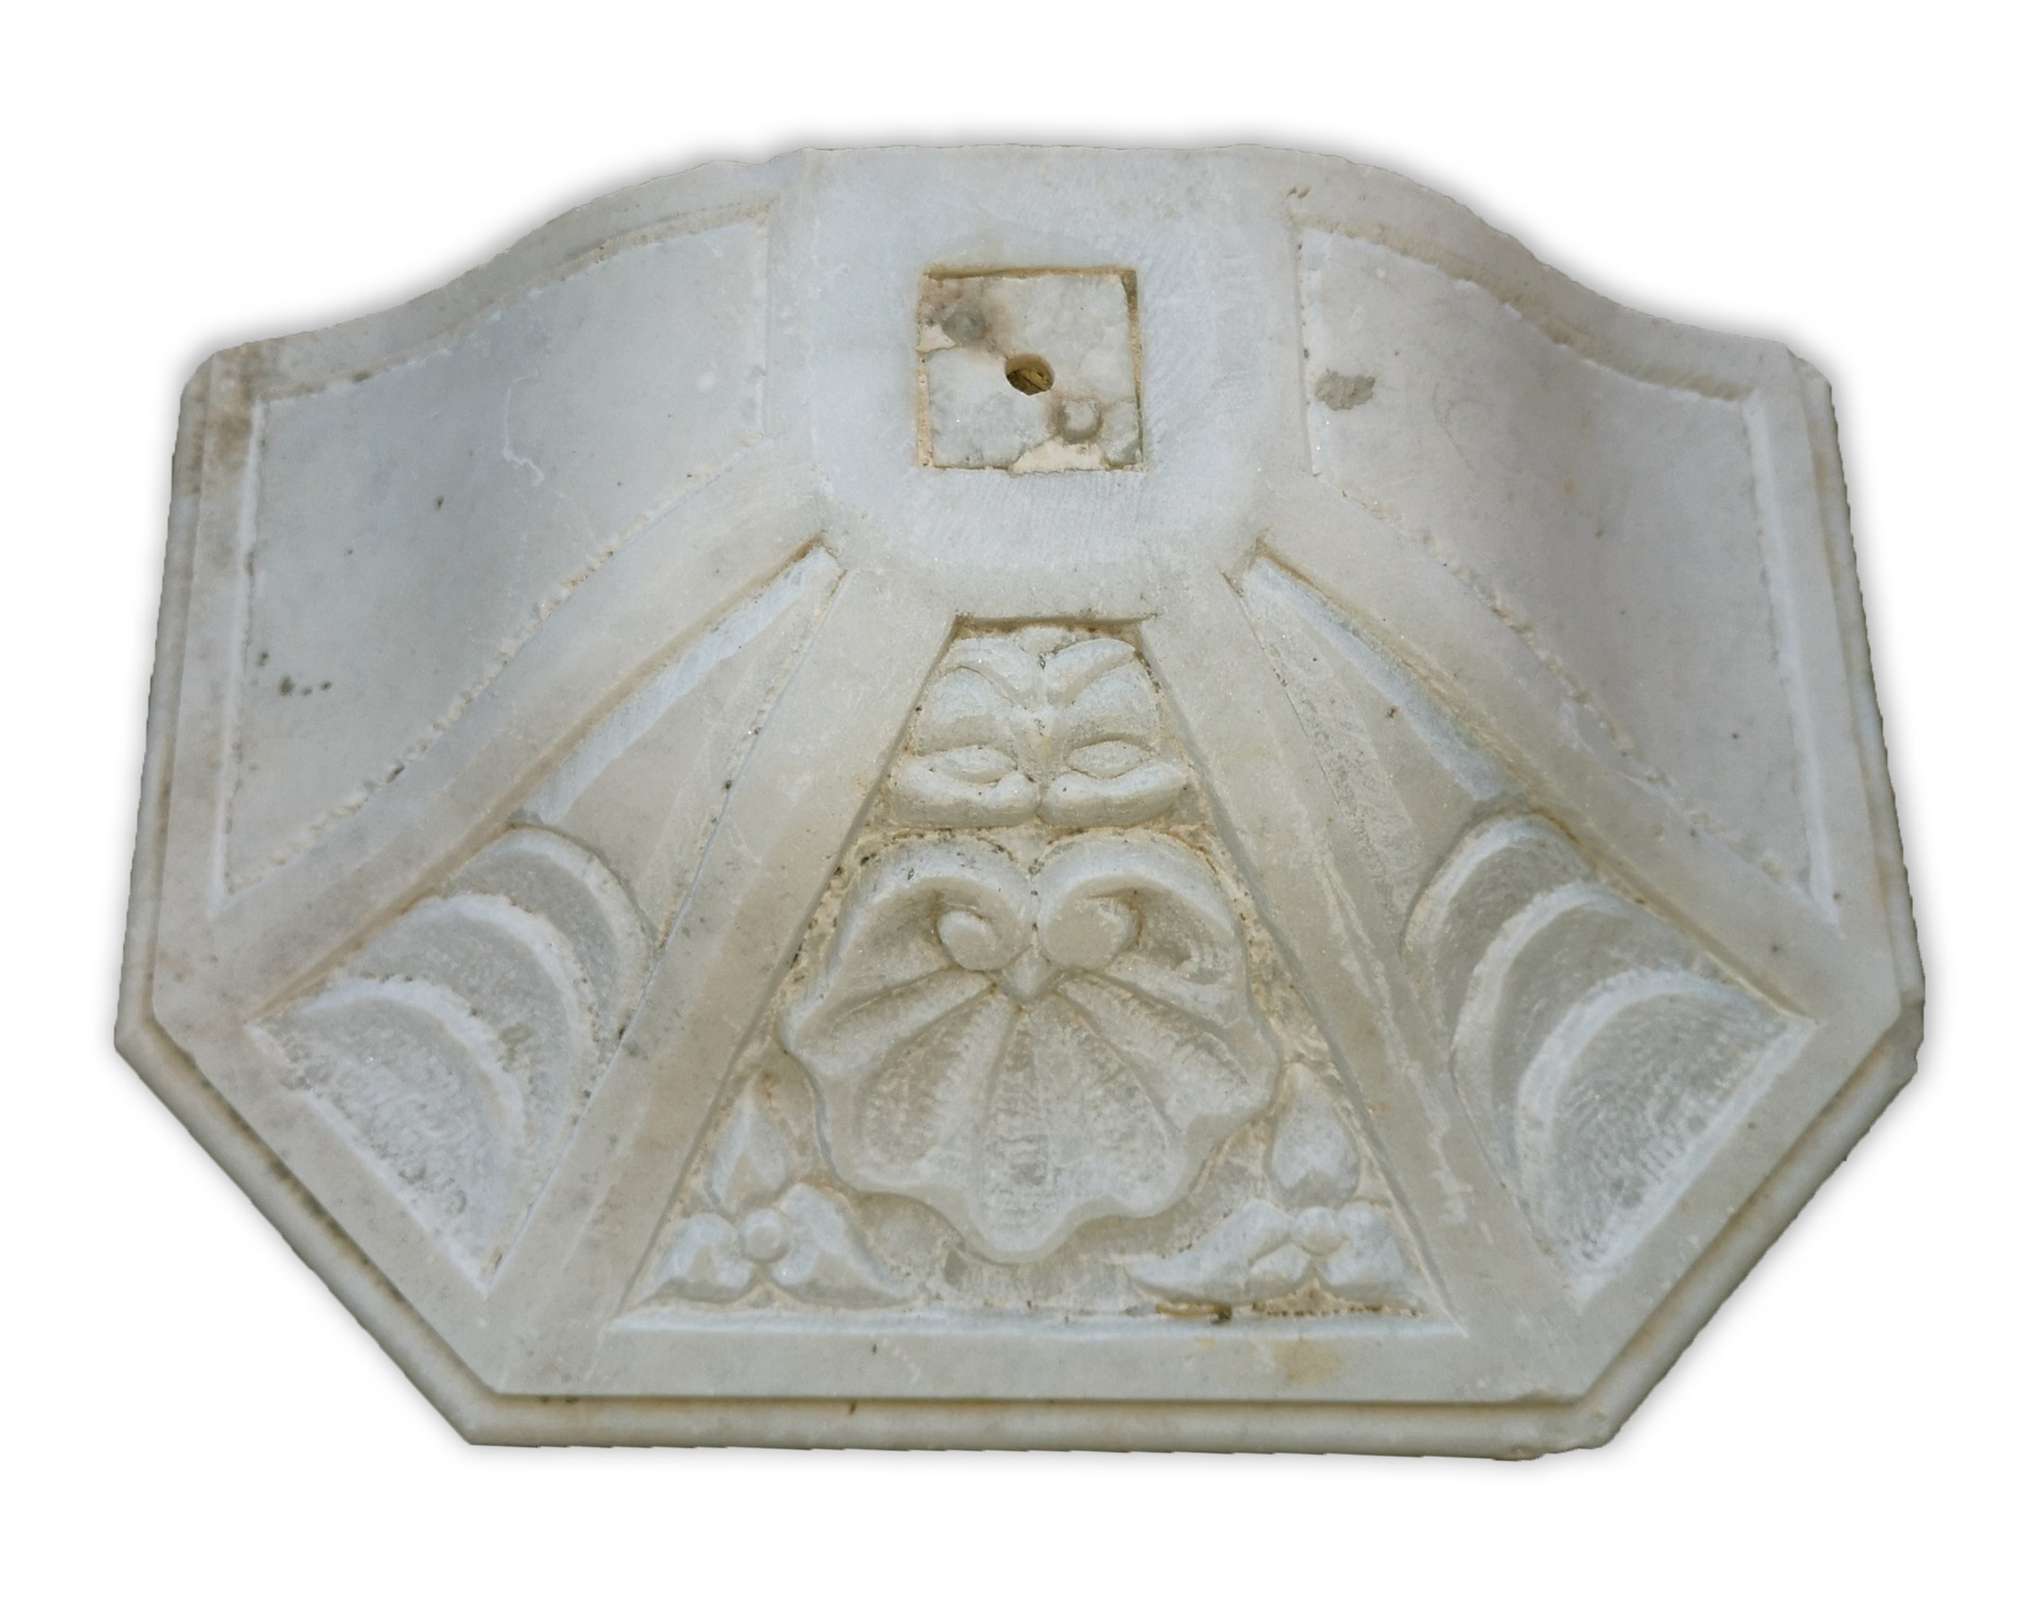 Antica mensola in marmo. Epoca 1800. - Mensole antiche - Architettura - Prodotti - Antichità Fiorillo